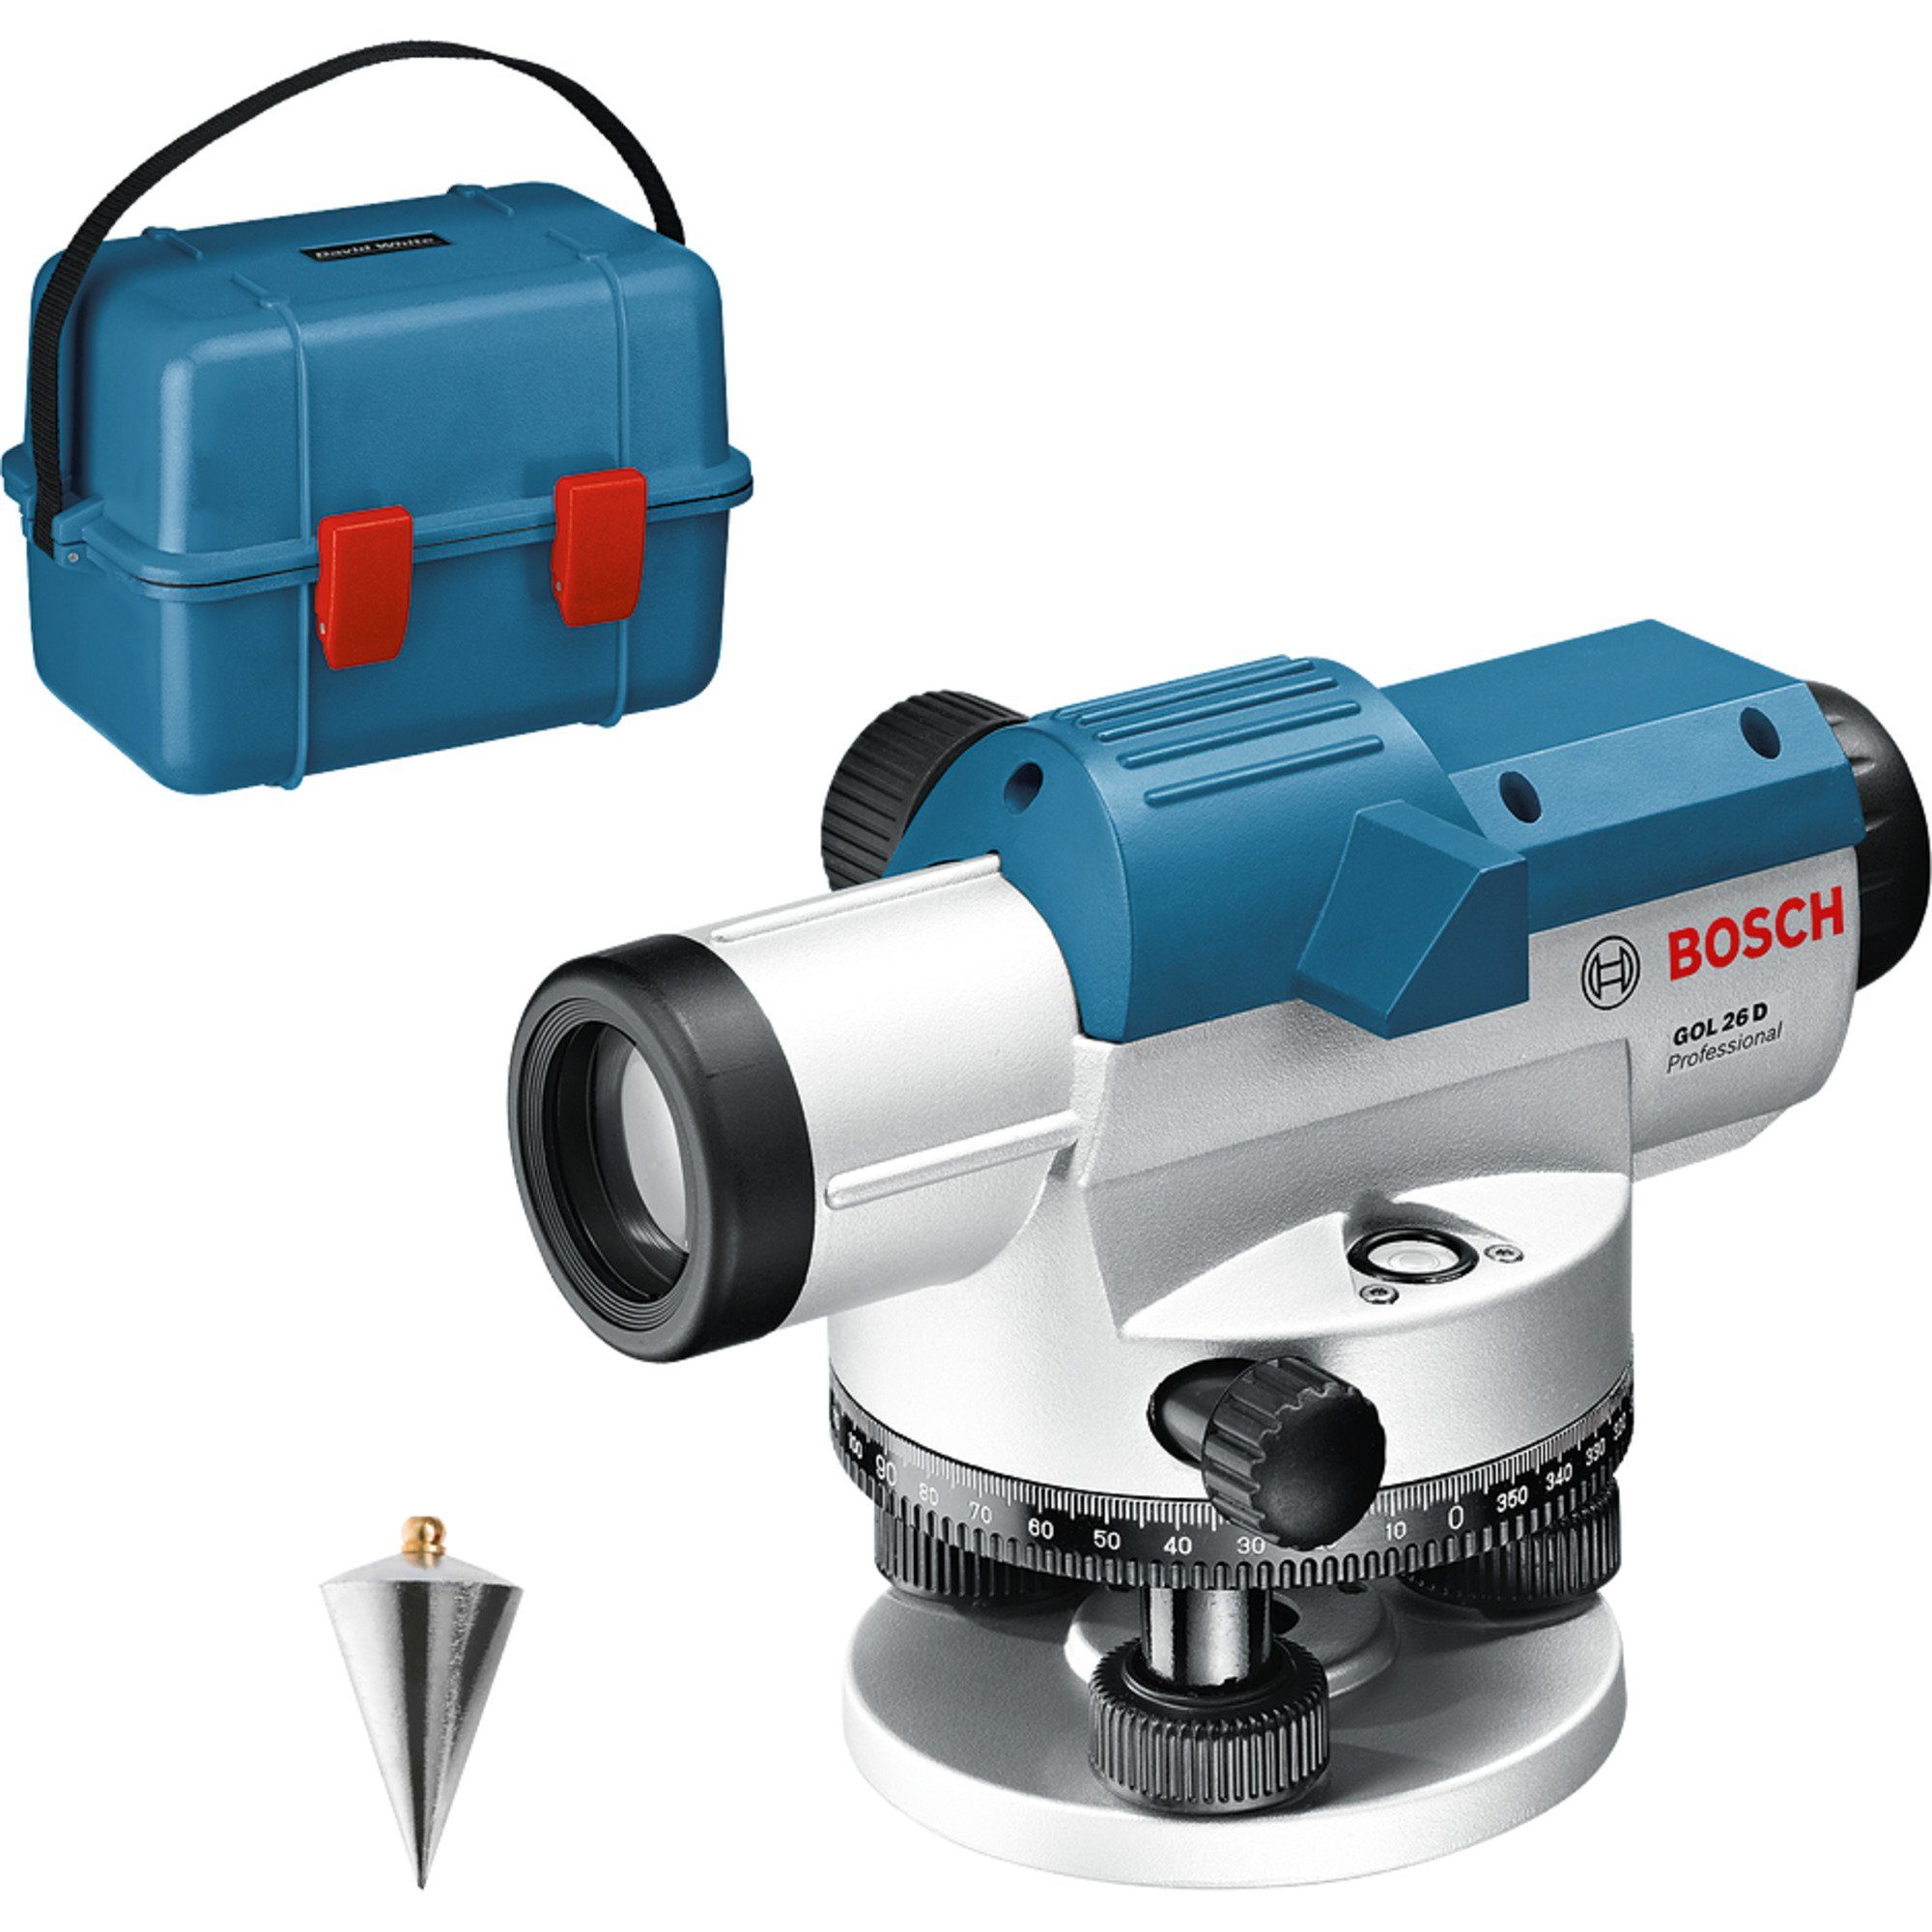 BOSCH Akku-Multifunktionswerkzeug Bosch Professional Optisches 26 Nivelliergerät GOL